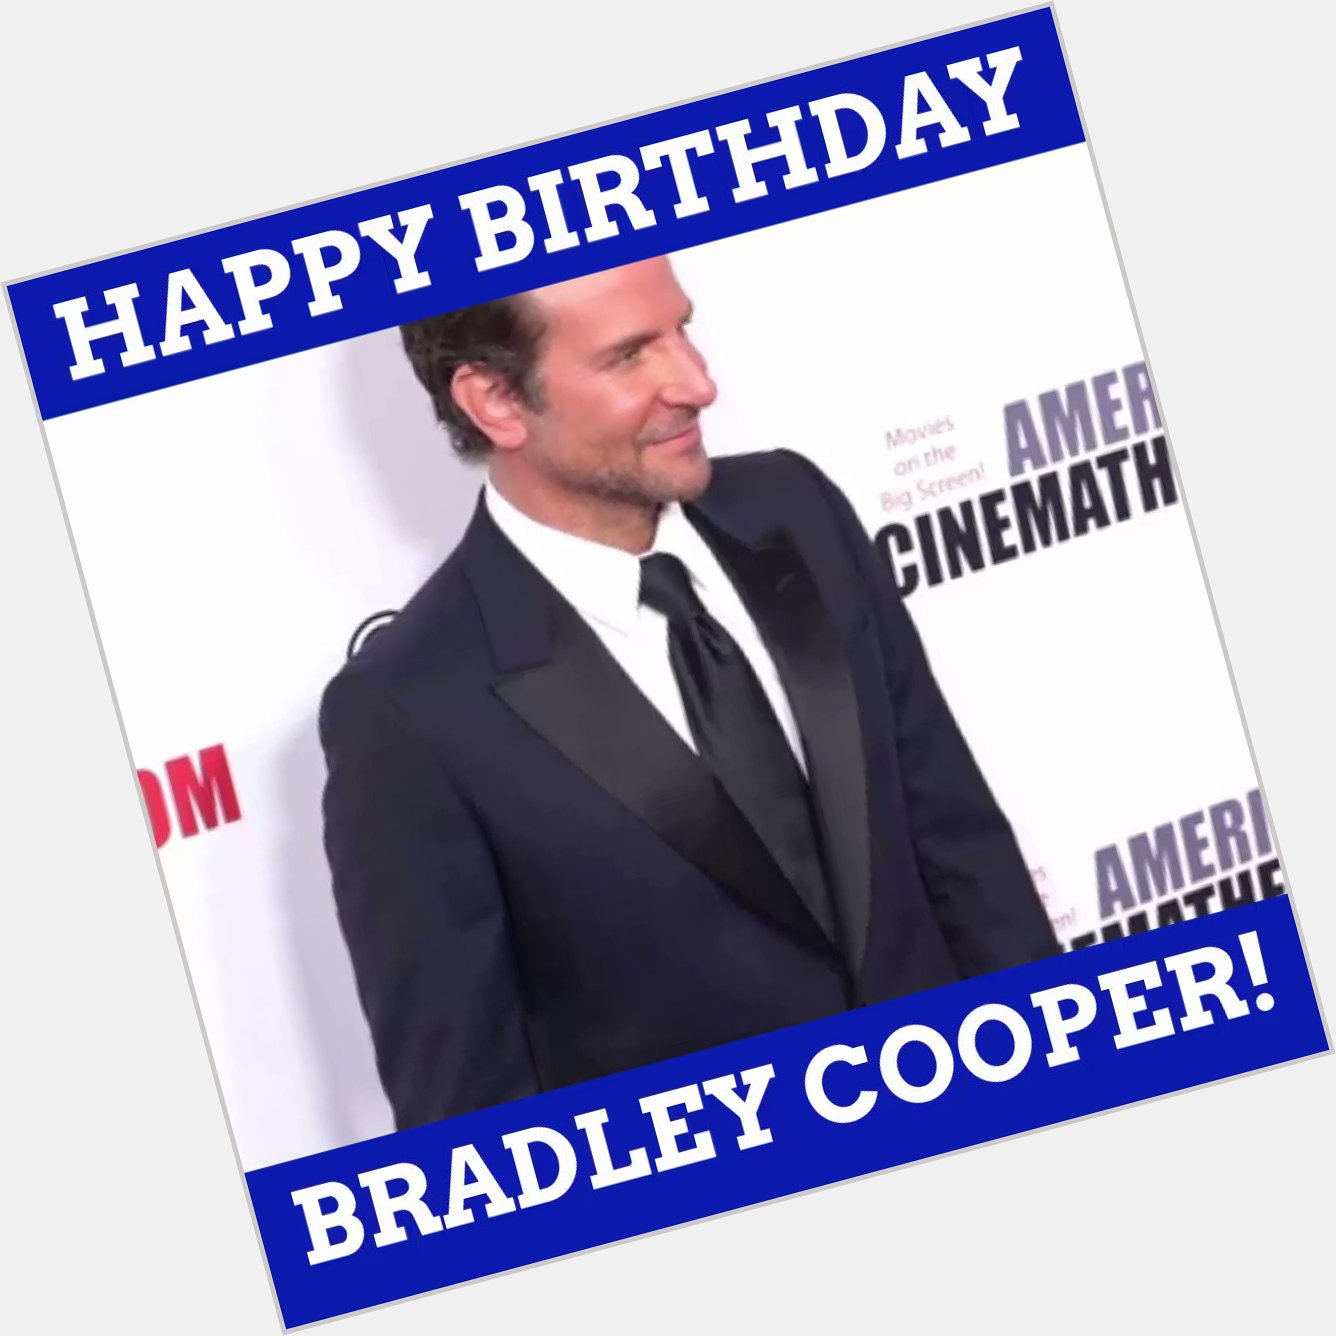 Happy birthday to nominee Bradley Cooper!  